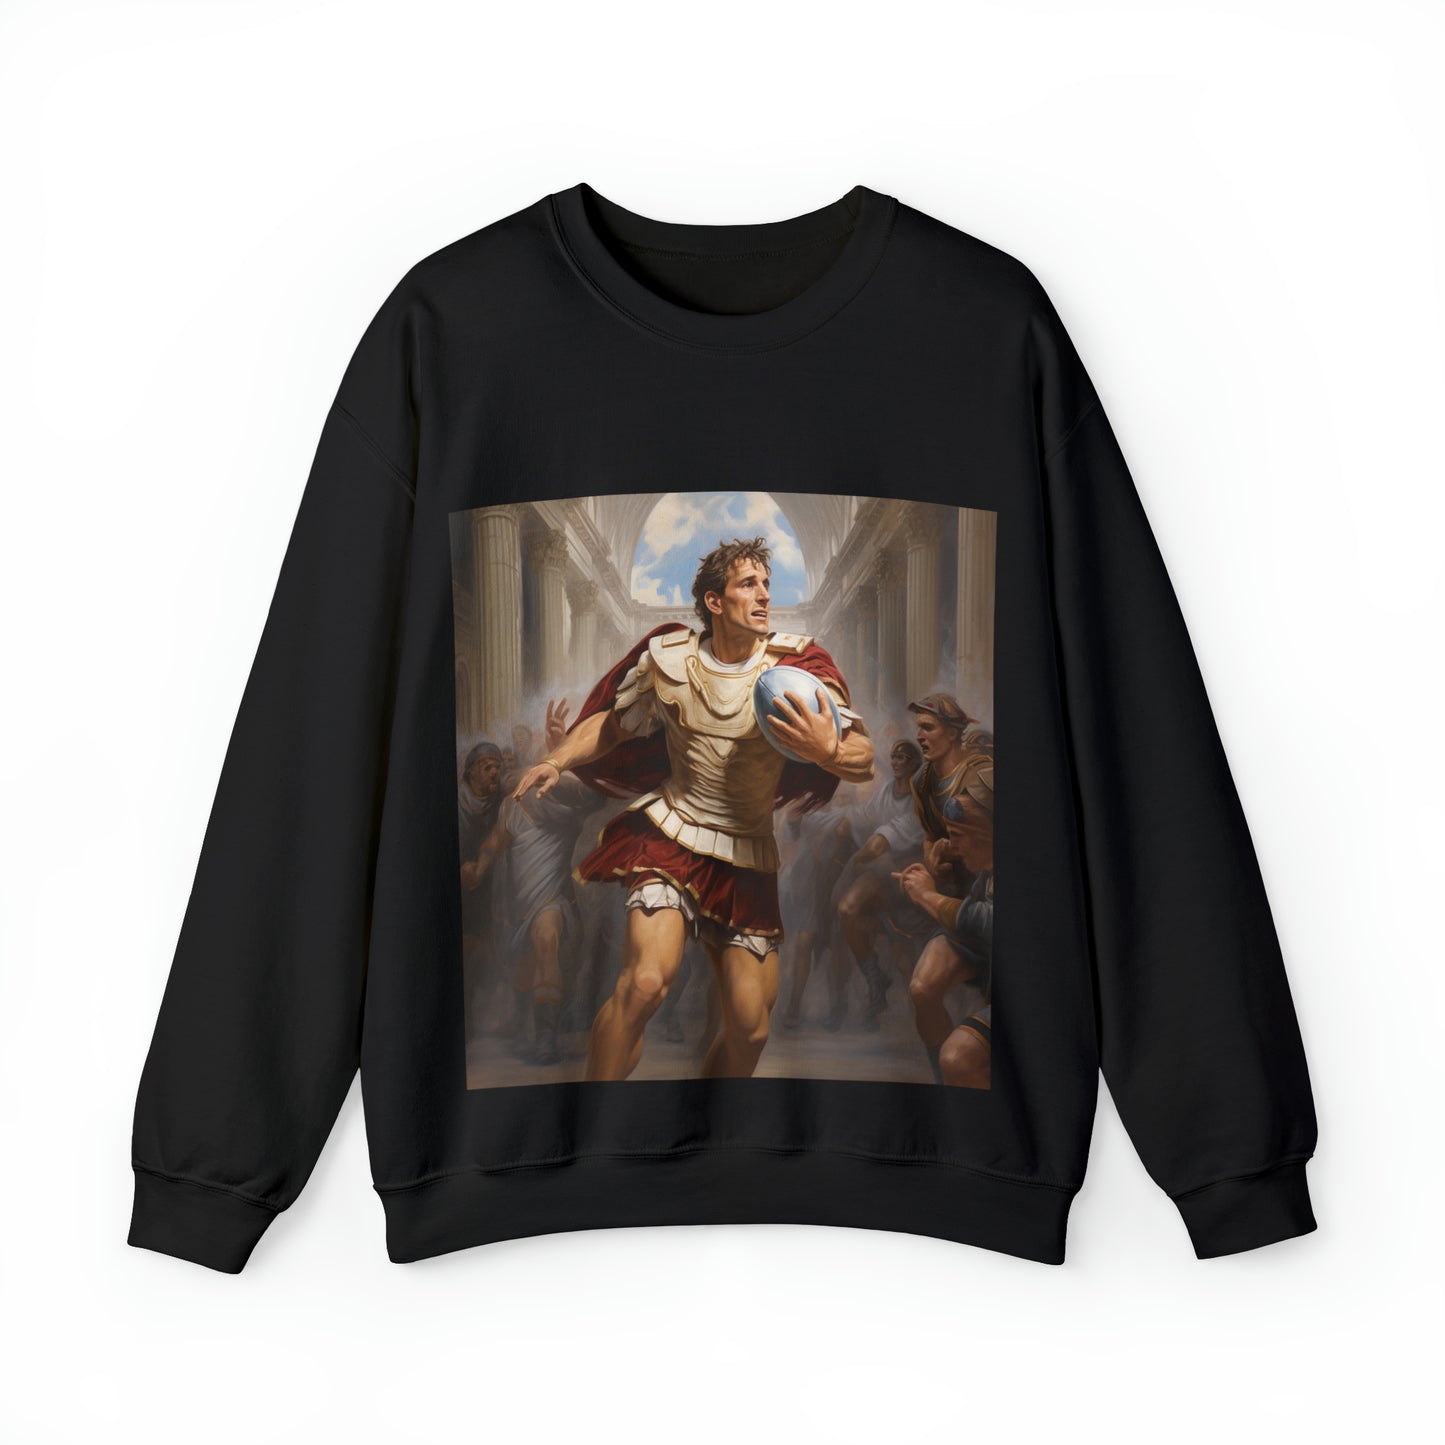 Caesar Rugby - black sweatshirt